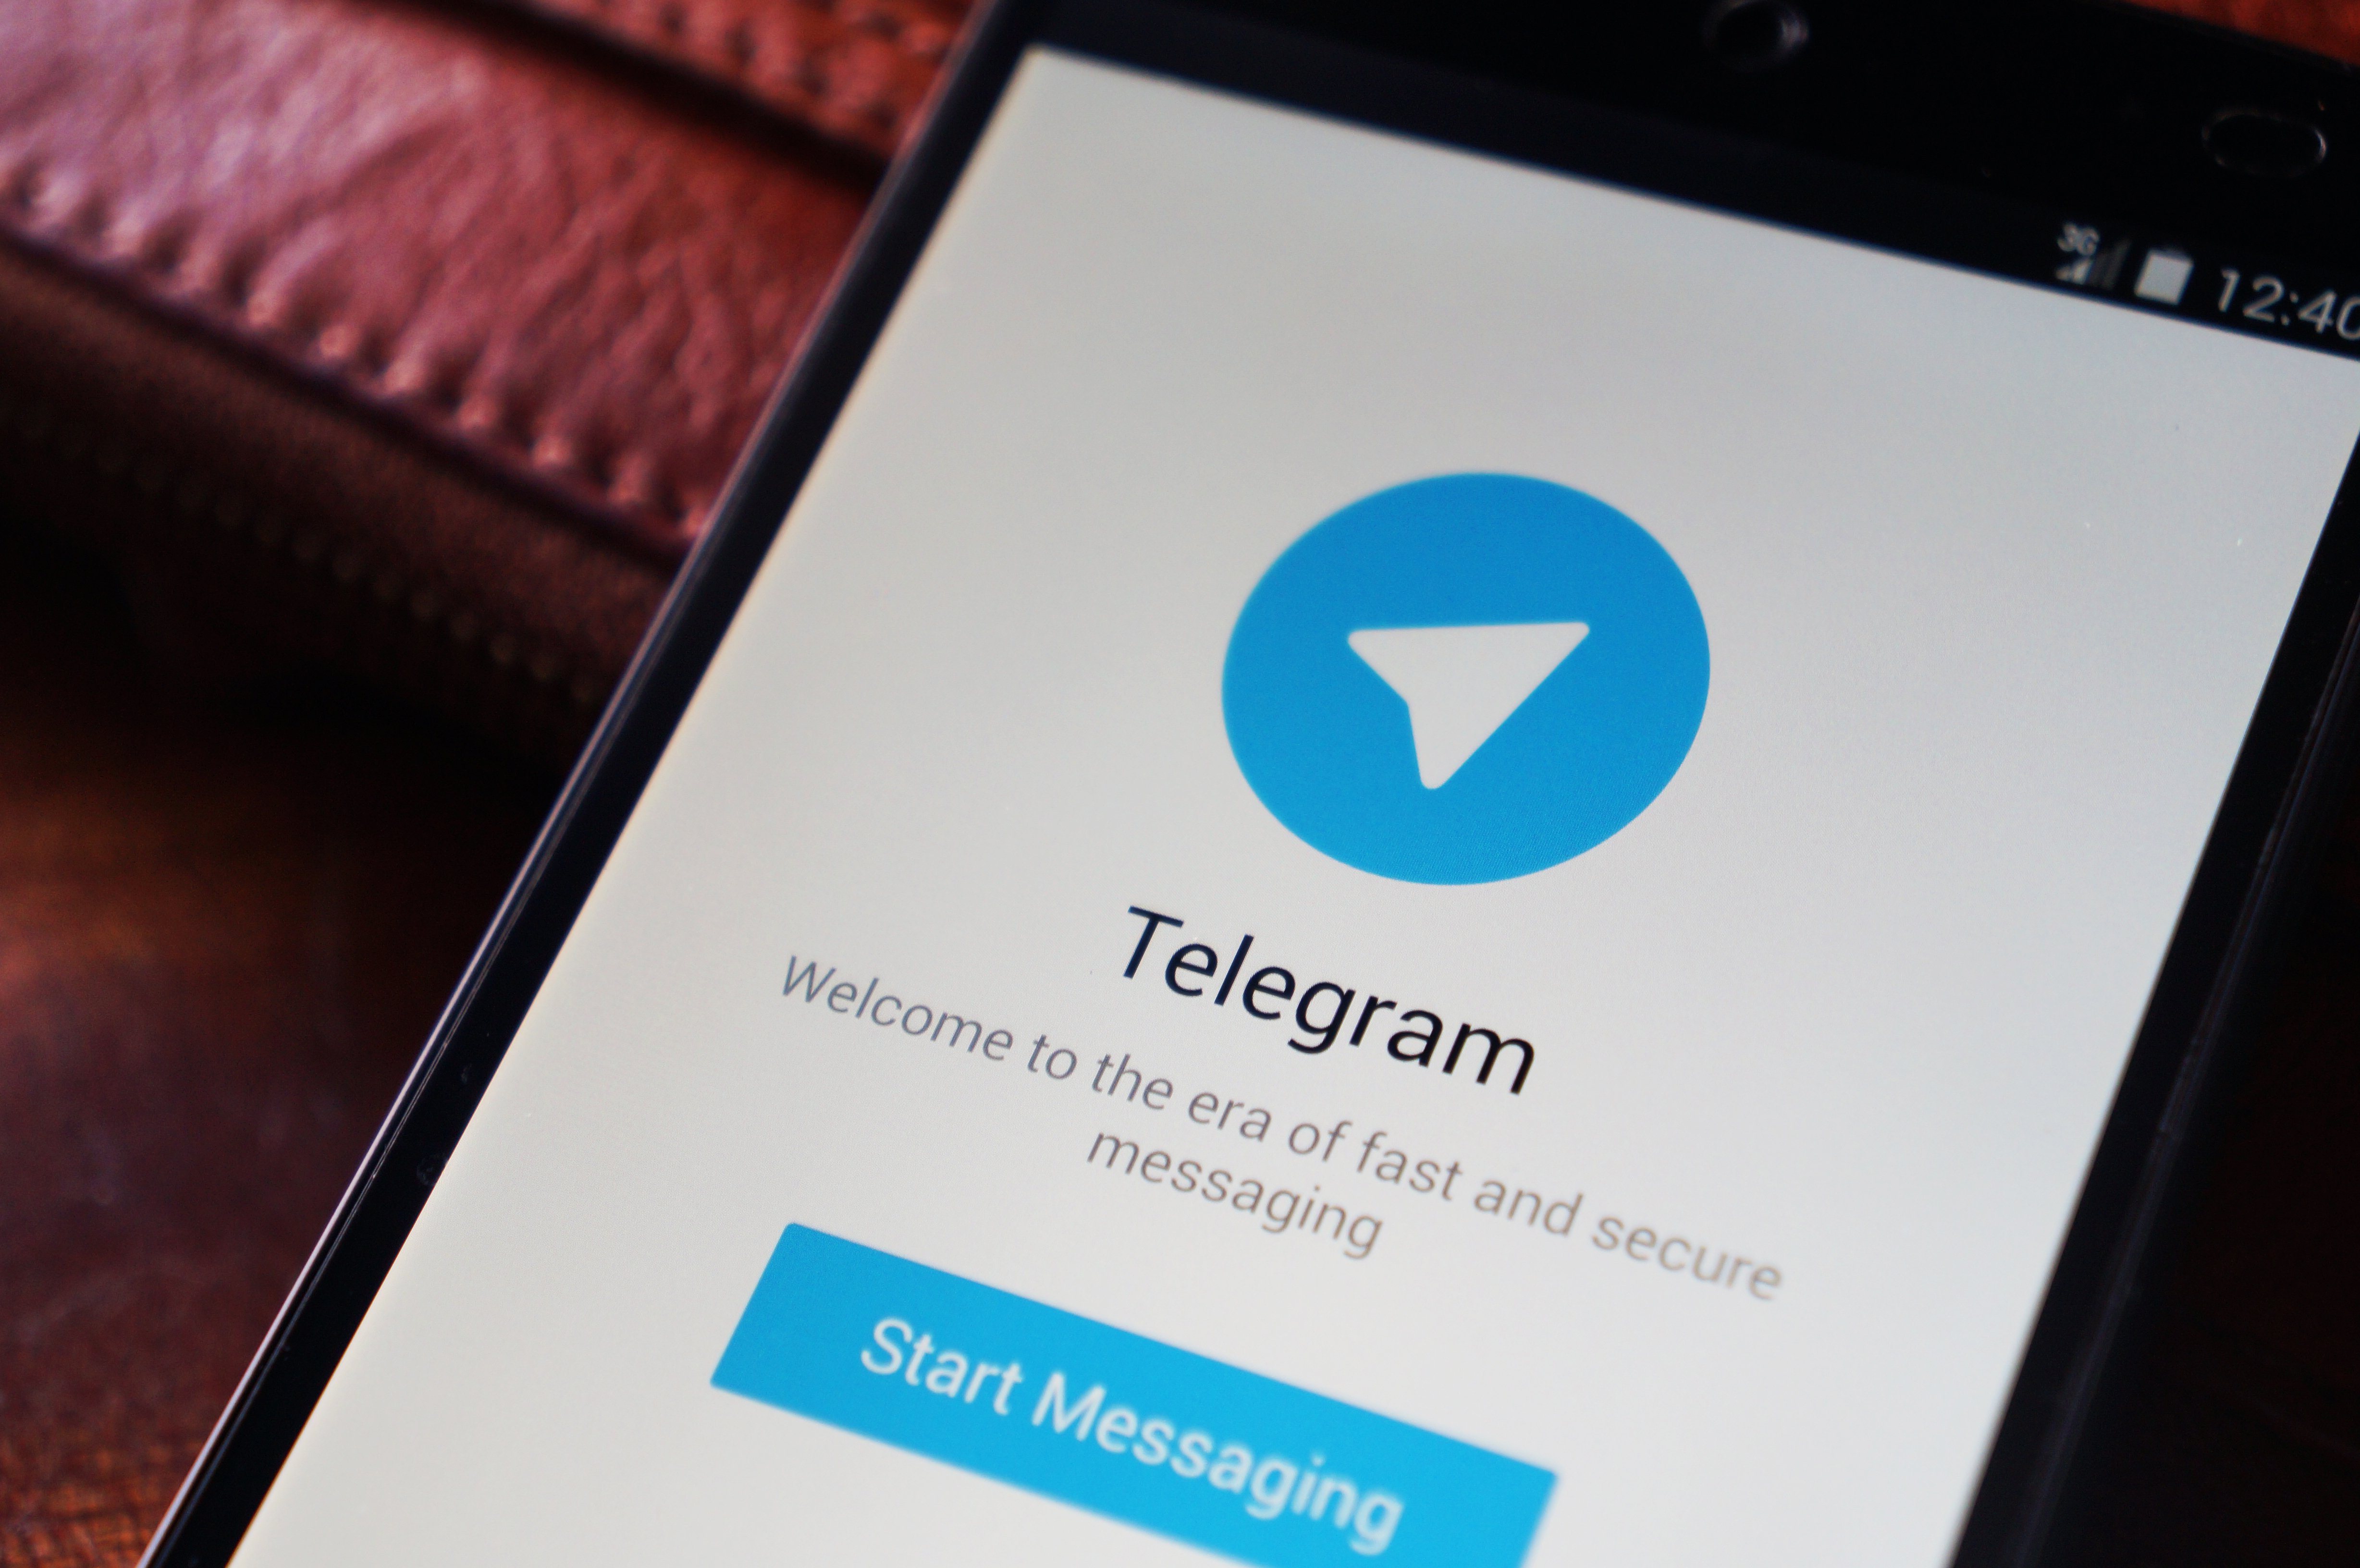 اختلال تماس صوتی تلگرام برطرف شد / تماس صوتی تلگرام، مشروط بر رضایت اپراتورها